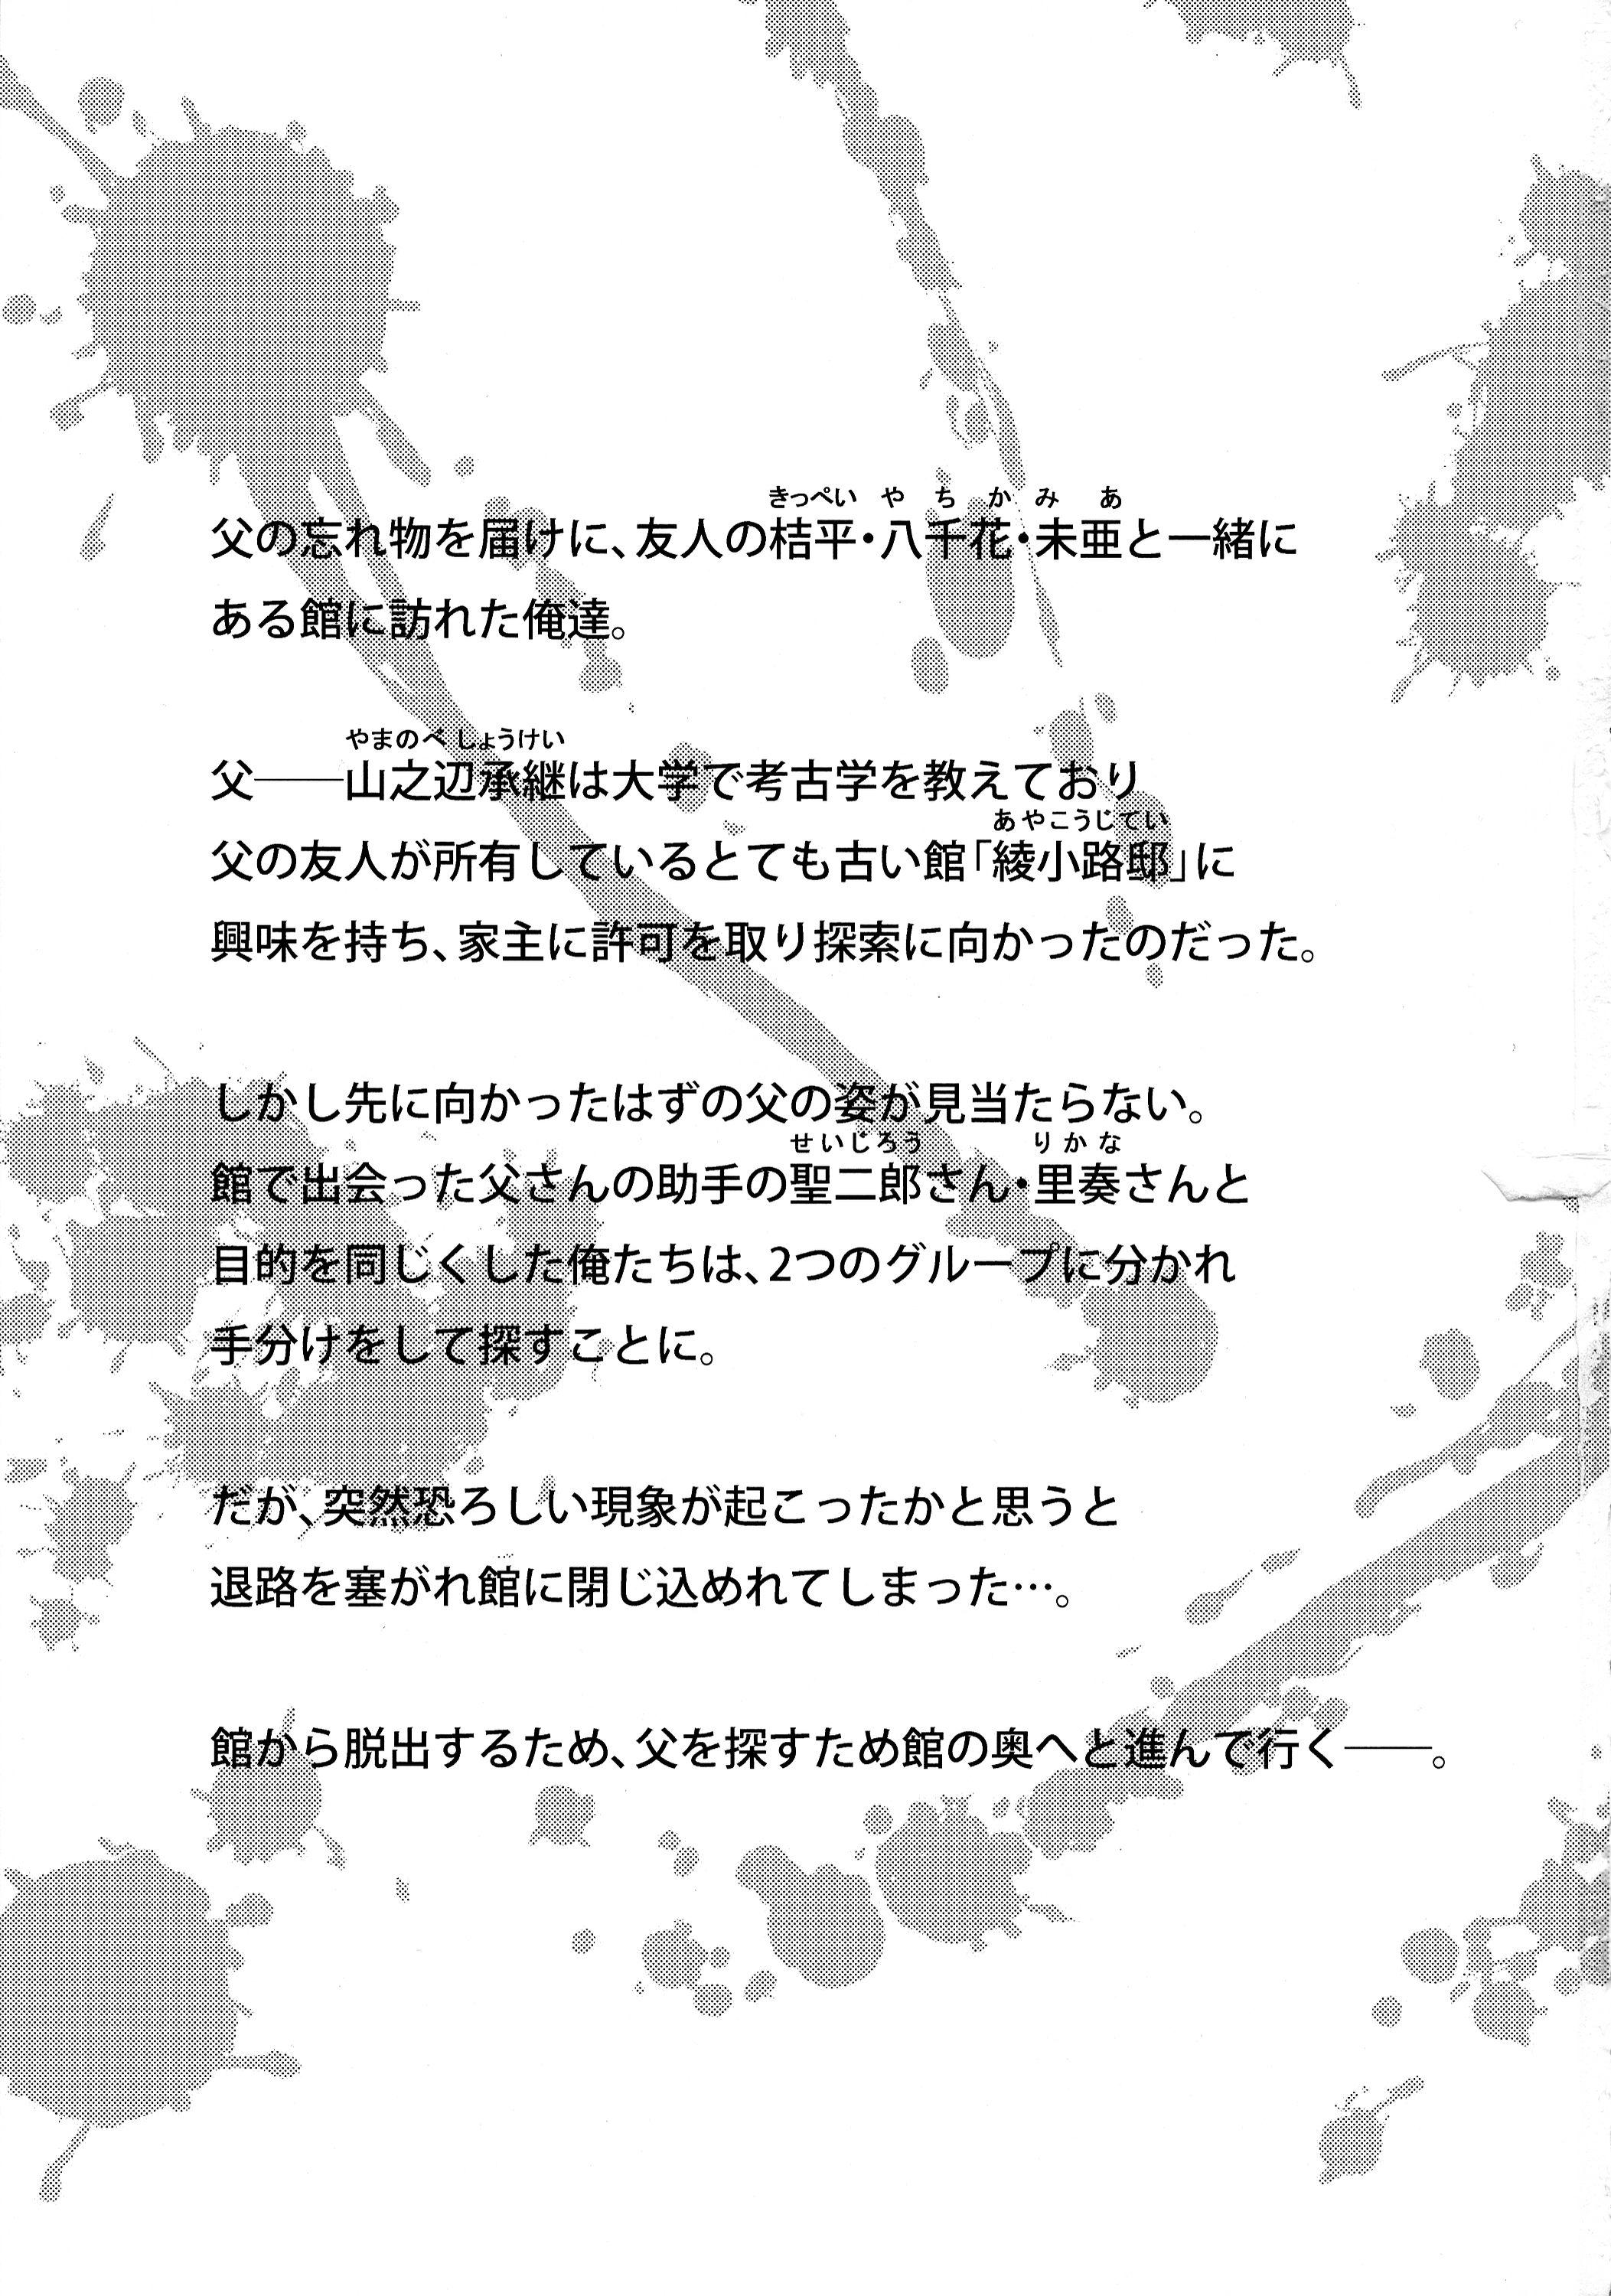 Asstomouth Futanari ni Naru Kanojo no Aventure - Fukai ni nemuru oujo no abaddon Cheat - Page 3